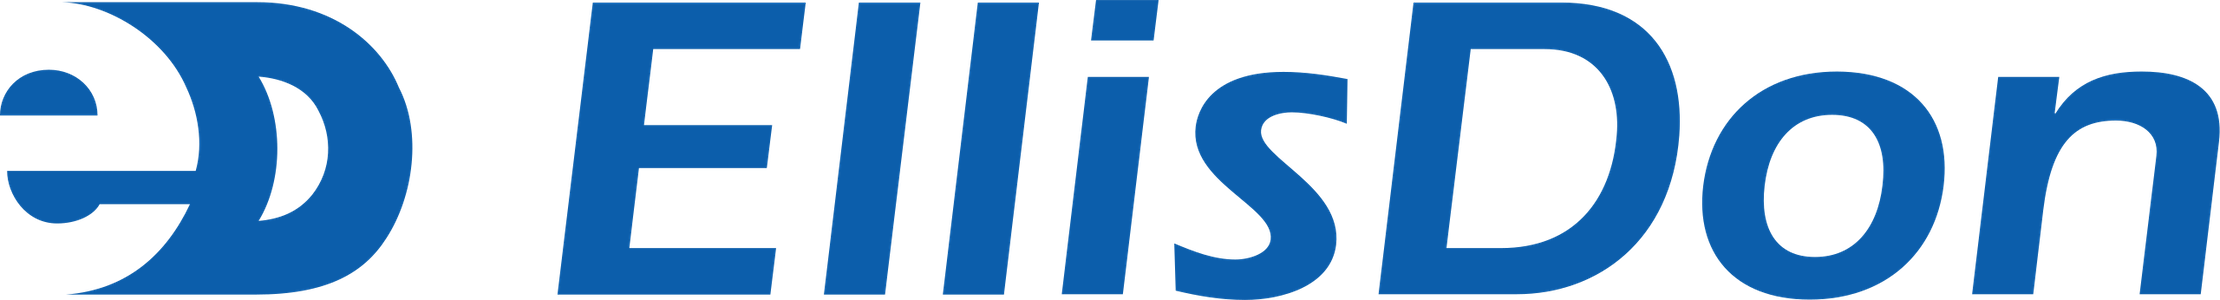 Ellis Don Logo